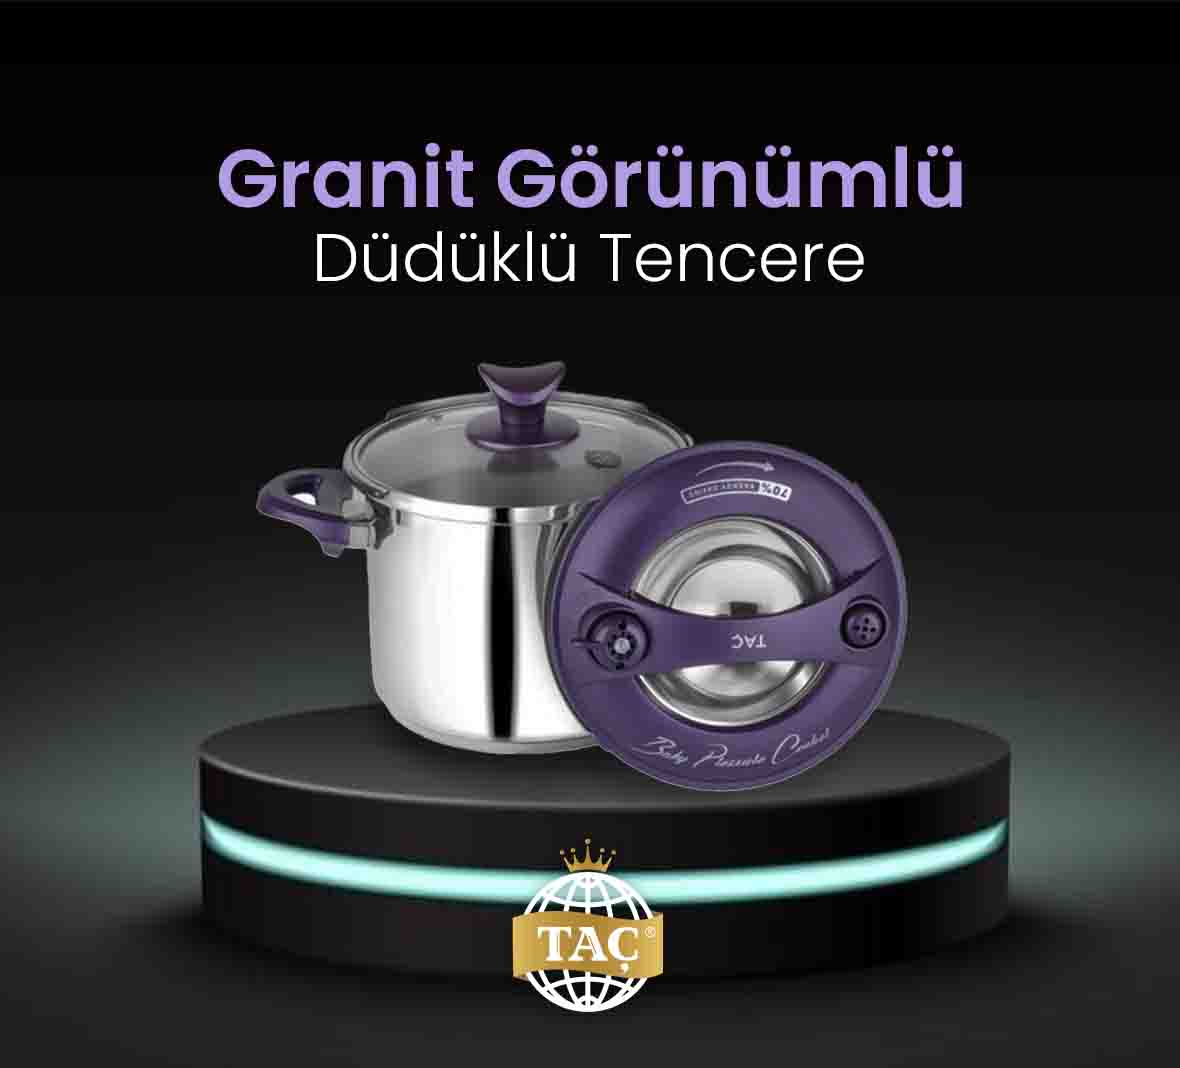 Granit Görünümlü Düdüklü Tencere - Pişirme Ürünleri - Tacev.com